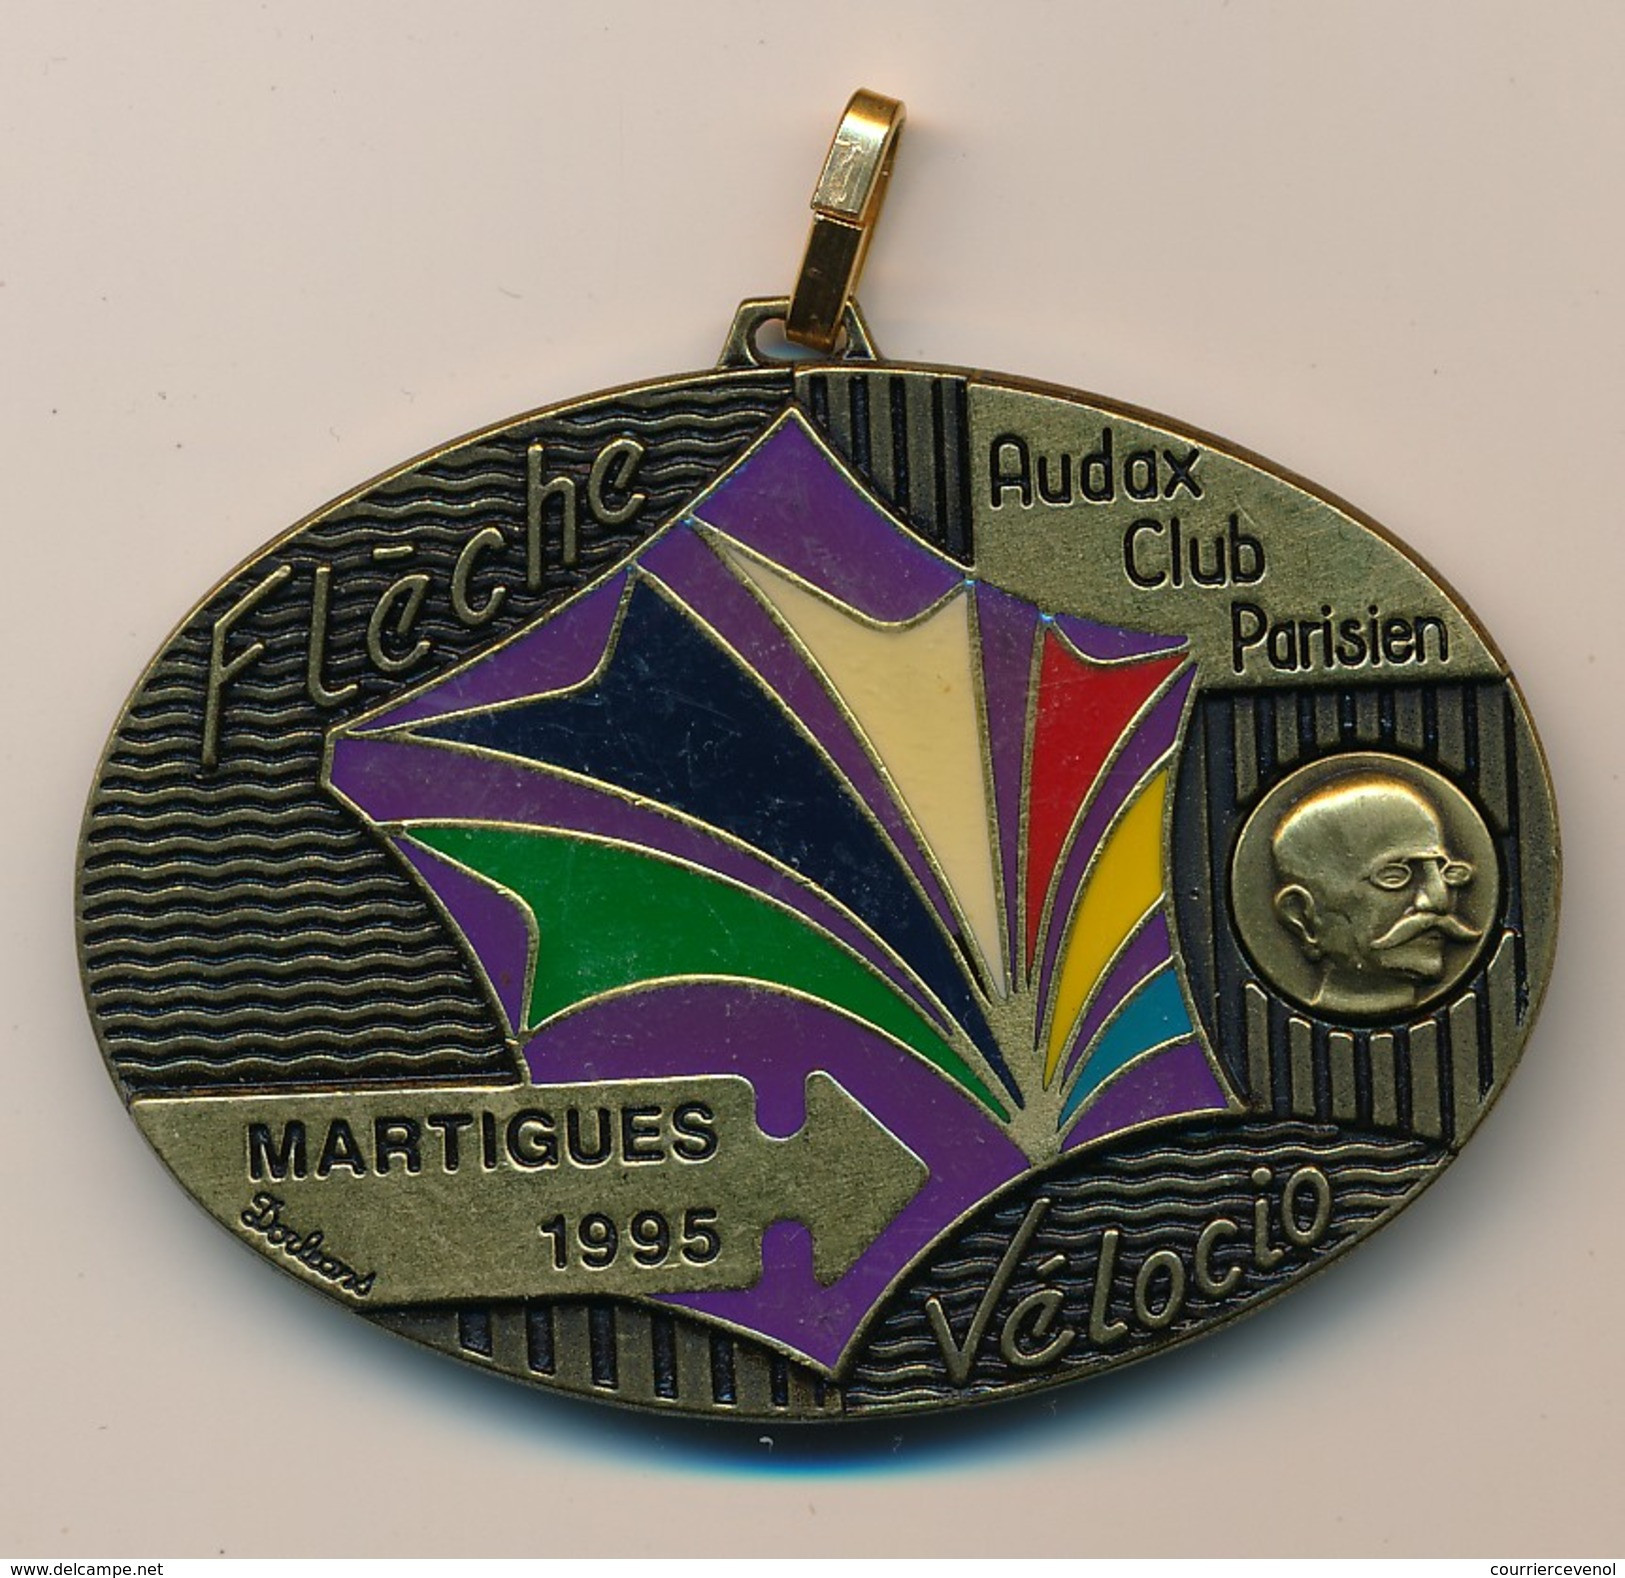 Médaille "Flèche Vélocio - Martigues 1995" - AUDAX CLUB PARISIEN - (Cyclotourisme) - Radsport